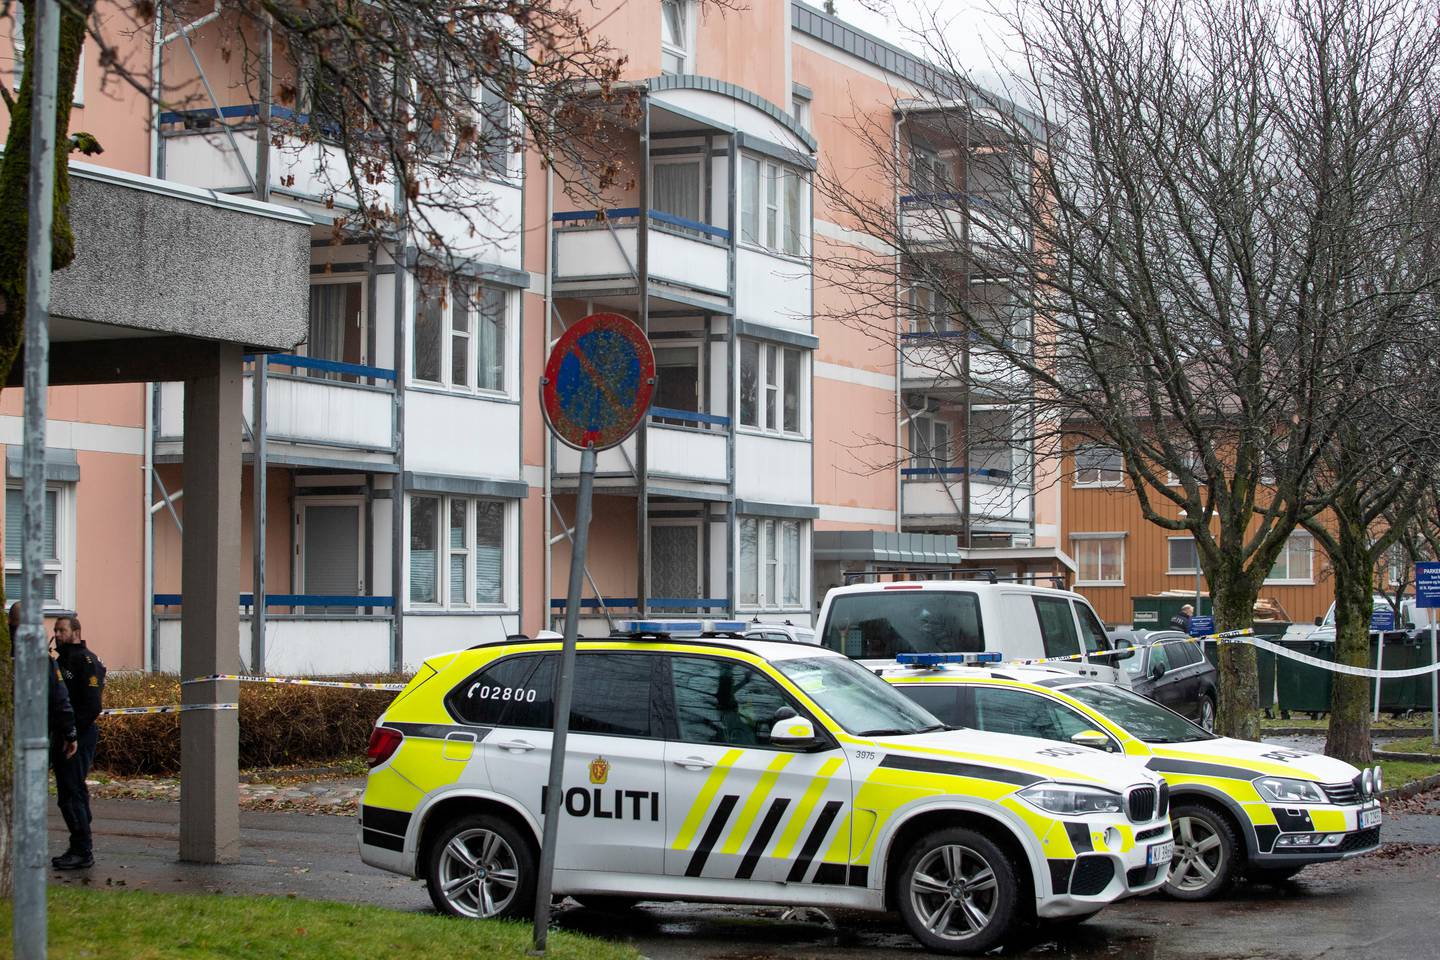 Drammen 20201112. 
Politiet har startet etterforskning etter at en kvinne ble funnet død i en leilighet i Drammen. Dødsfallet betegnes som mistenkelig.
Foto: Terje Bendiksby / NTB